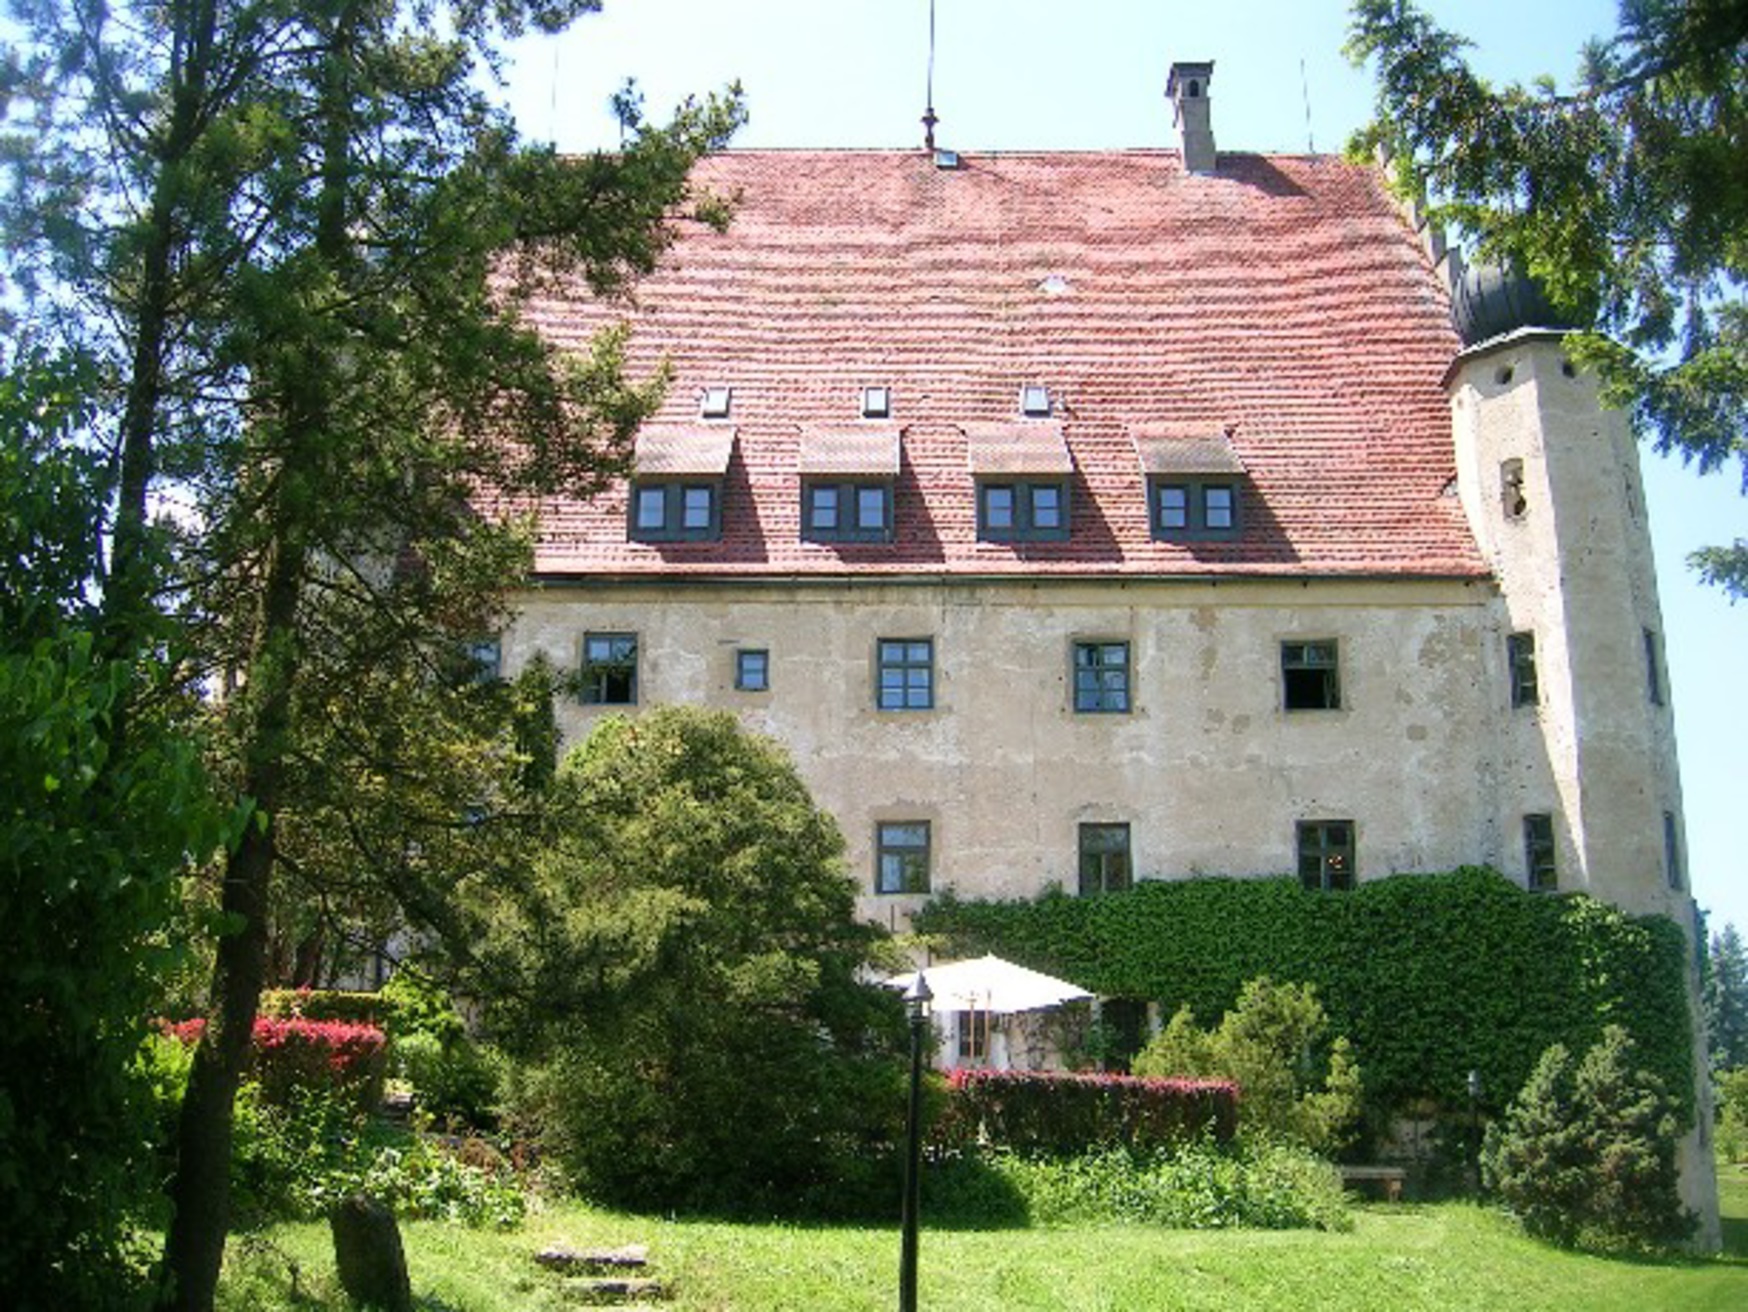 Hotel Schloss Eggersberg, Riedenburg.
